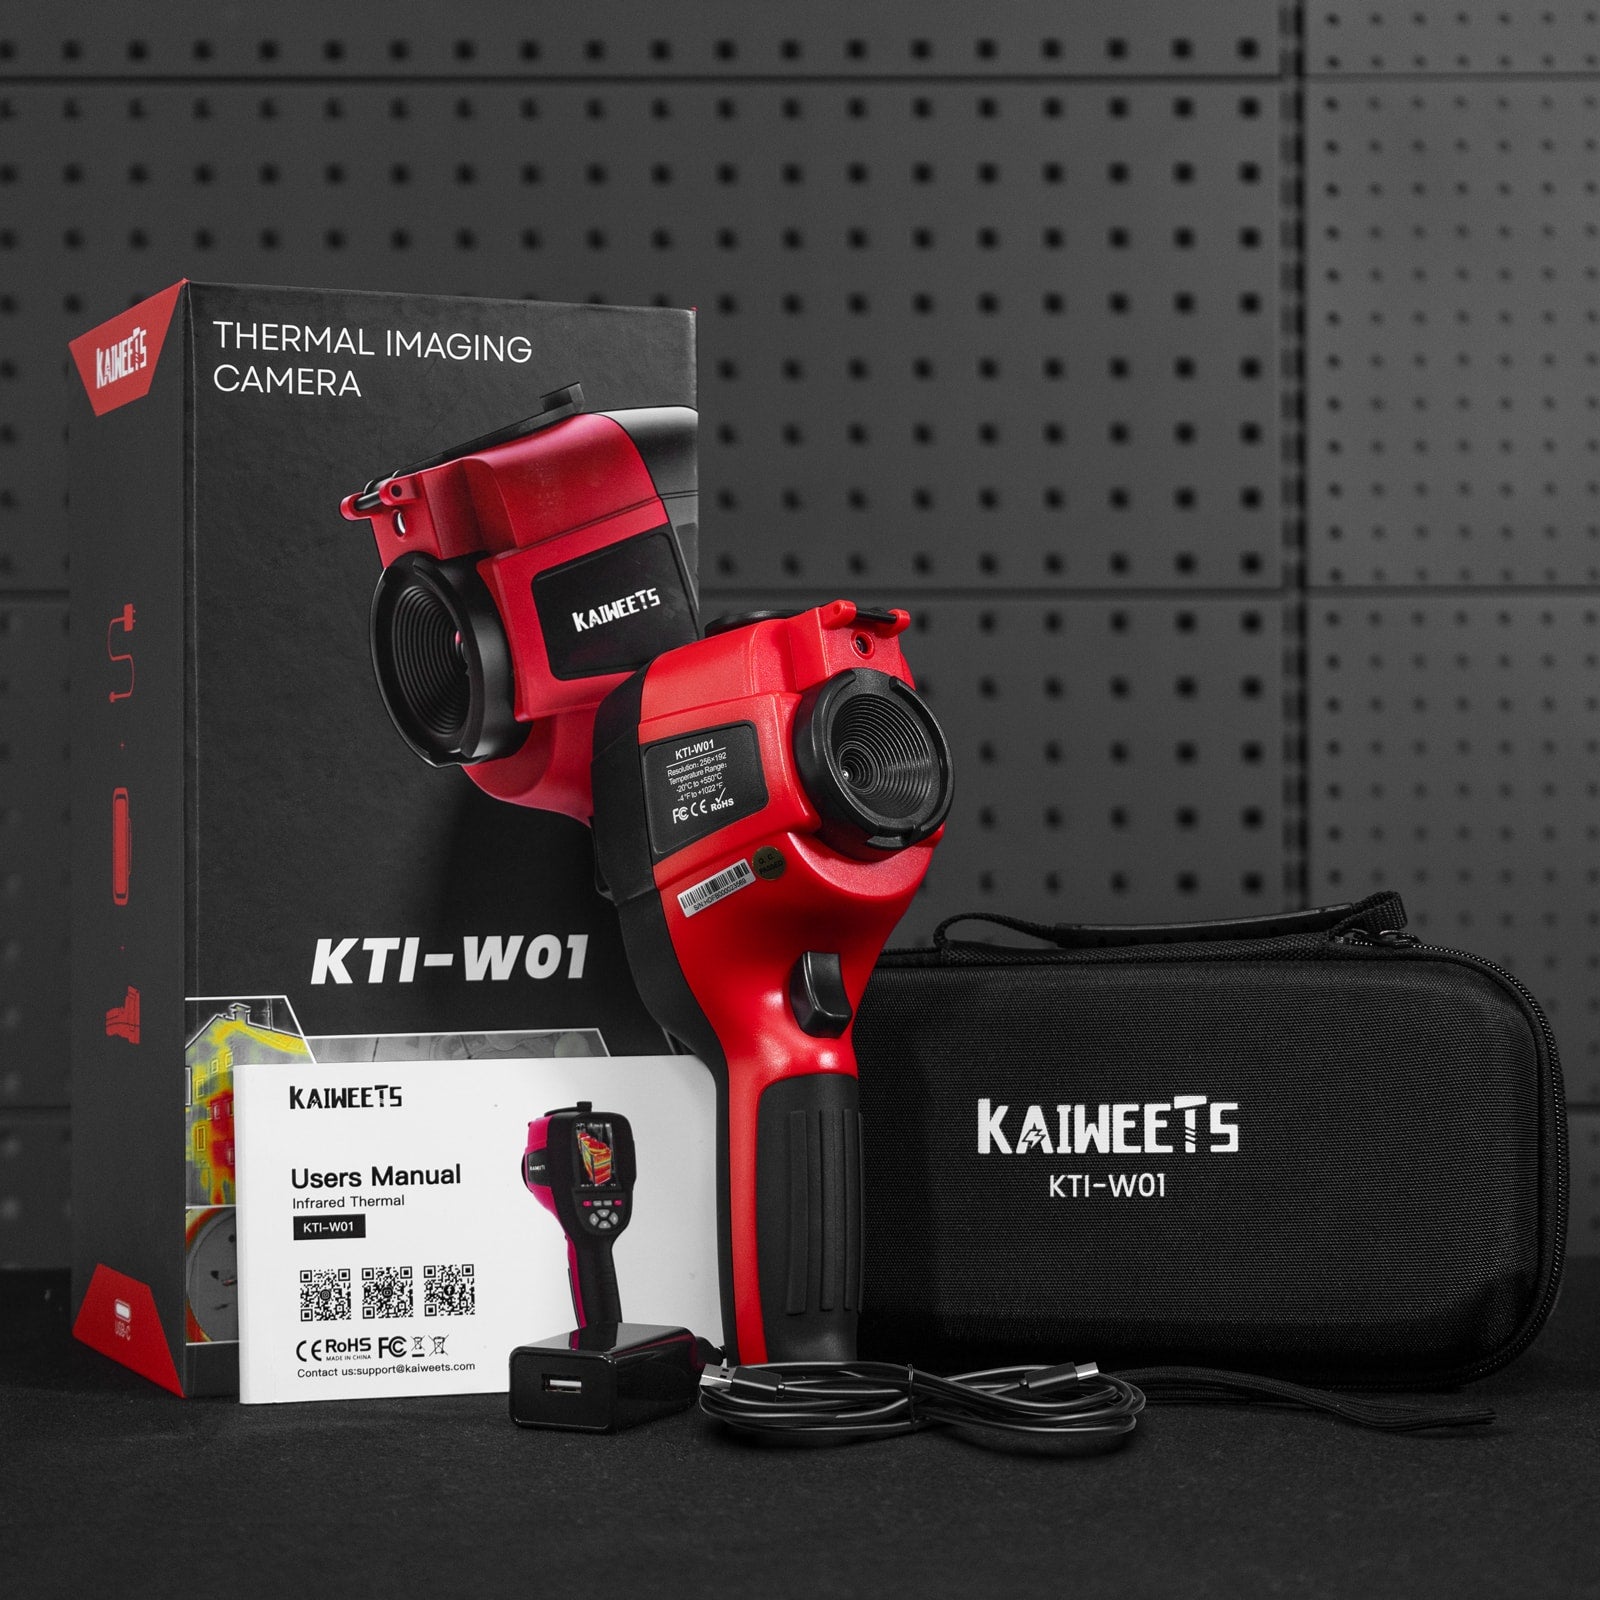 KAIWEETS KTI-W01 Thermal Imaging Camera, 256 * 192 IR Resolution